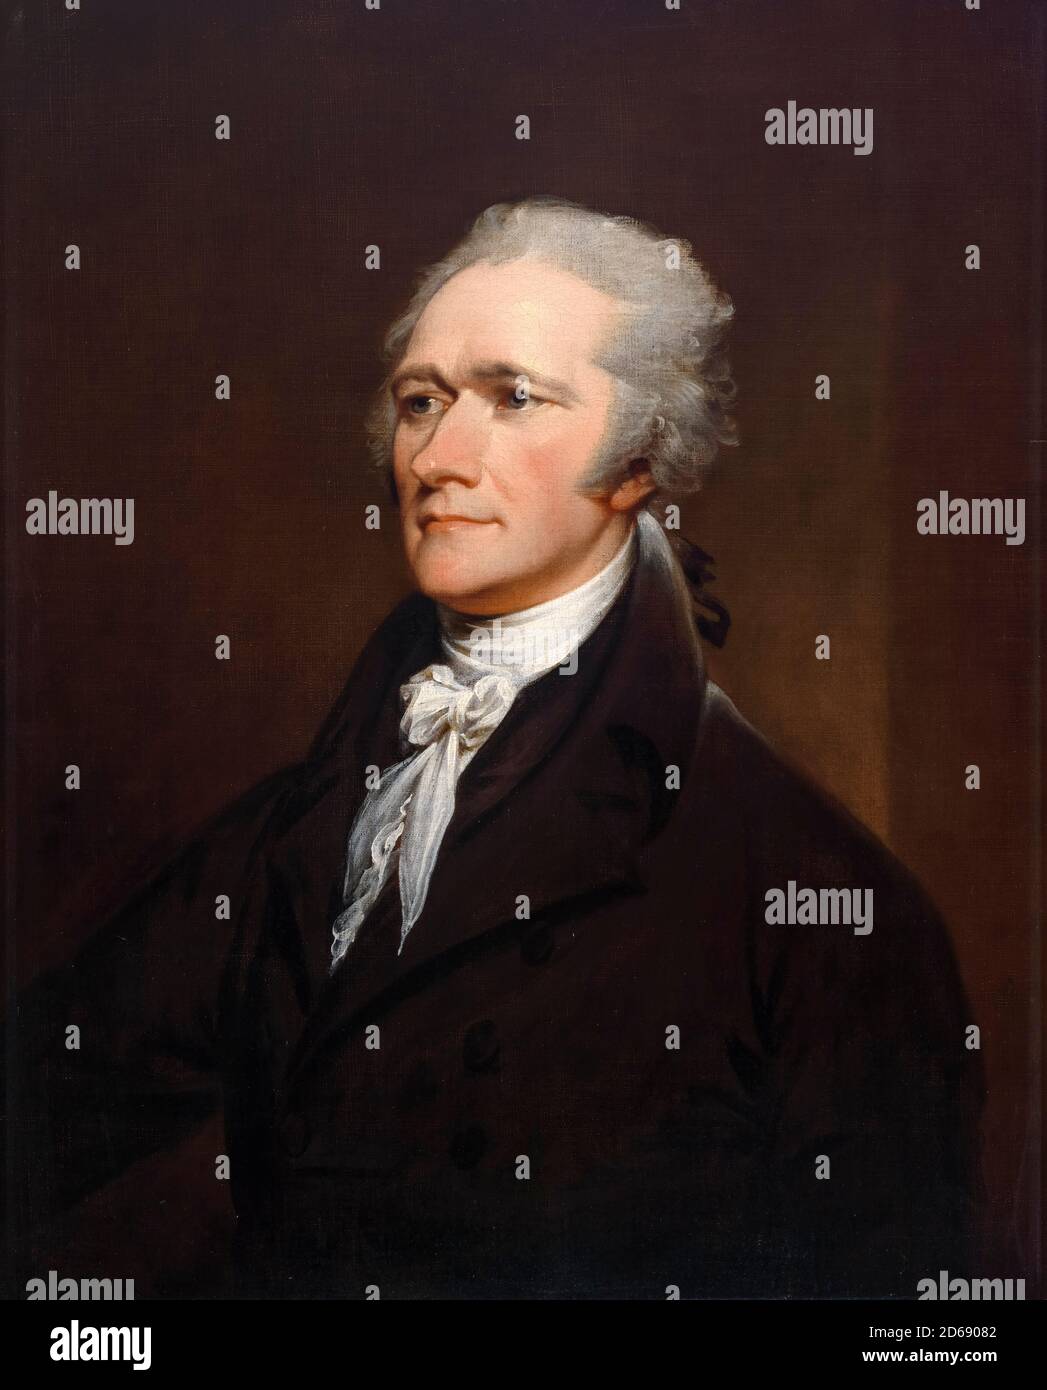 Alexander Hamilton (1755 ou 1757-1804), homme d'État américain, homme politique, commandant militaire, banquier et économiste. Il était l'un des Pères fondateurs des États-Unis, portrait peint par John Trumbull, 1806 Banque D'Images